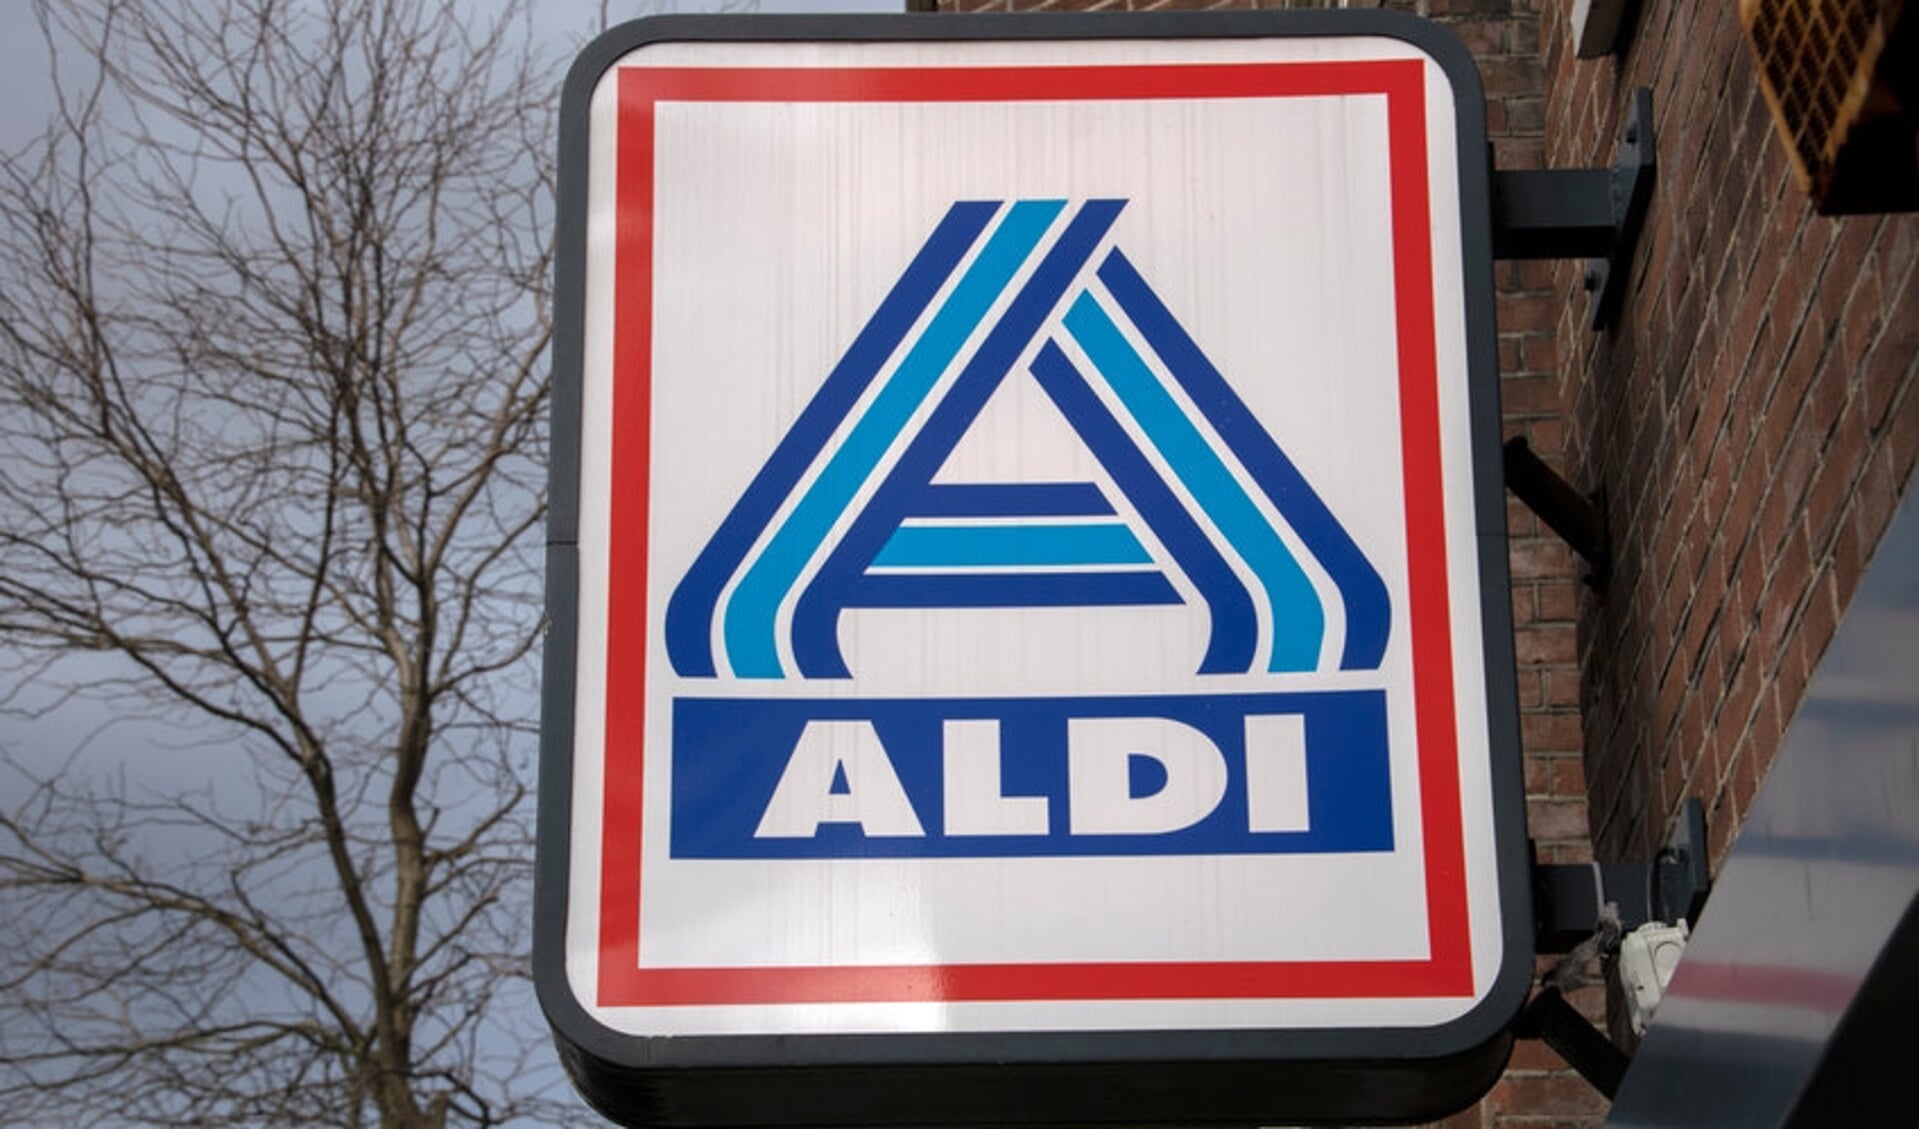 • De supermarkt van Aldi verdwijnt mogelijk uit het Staatsliedenkwartier in Woerden.